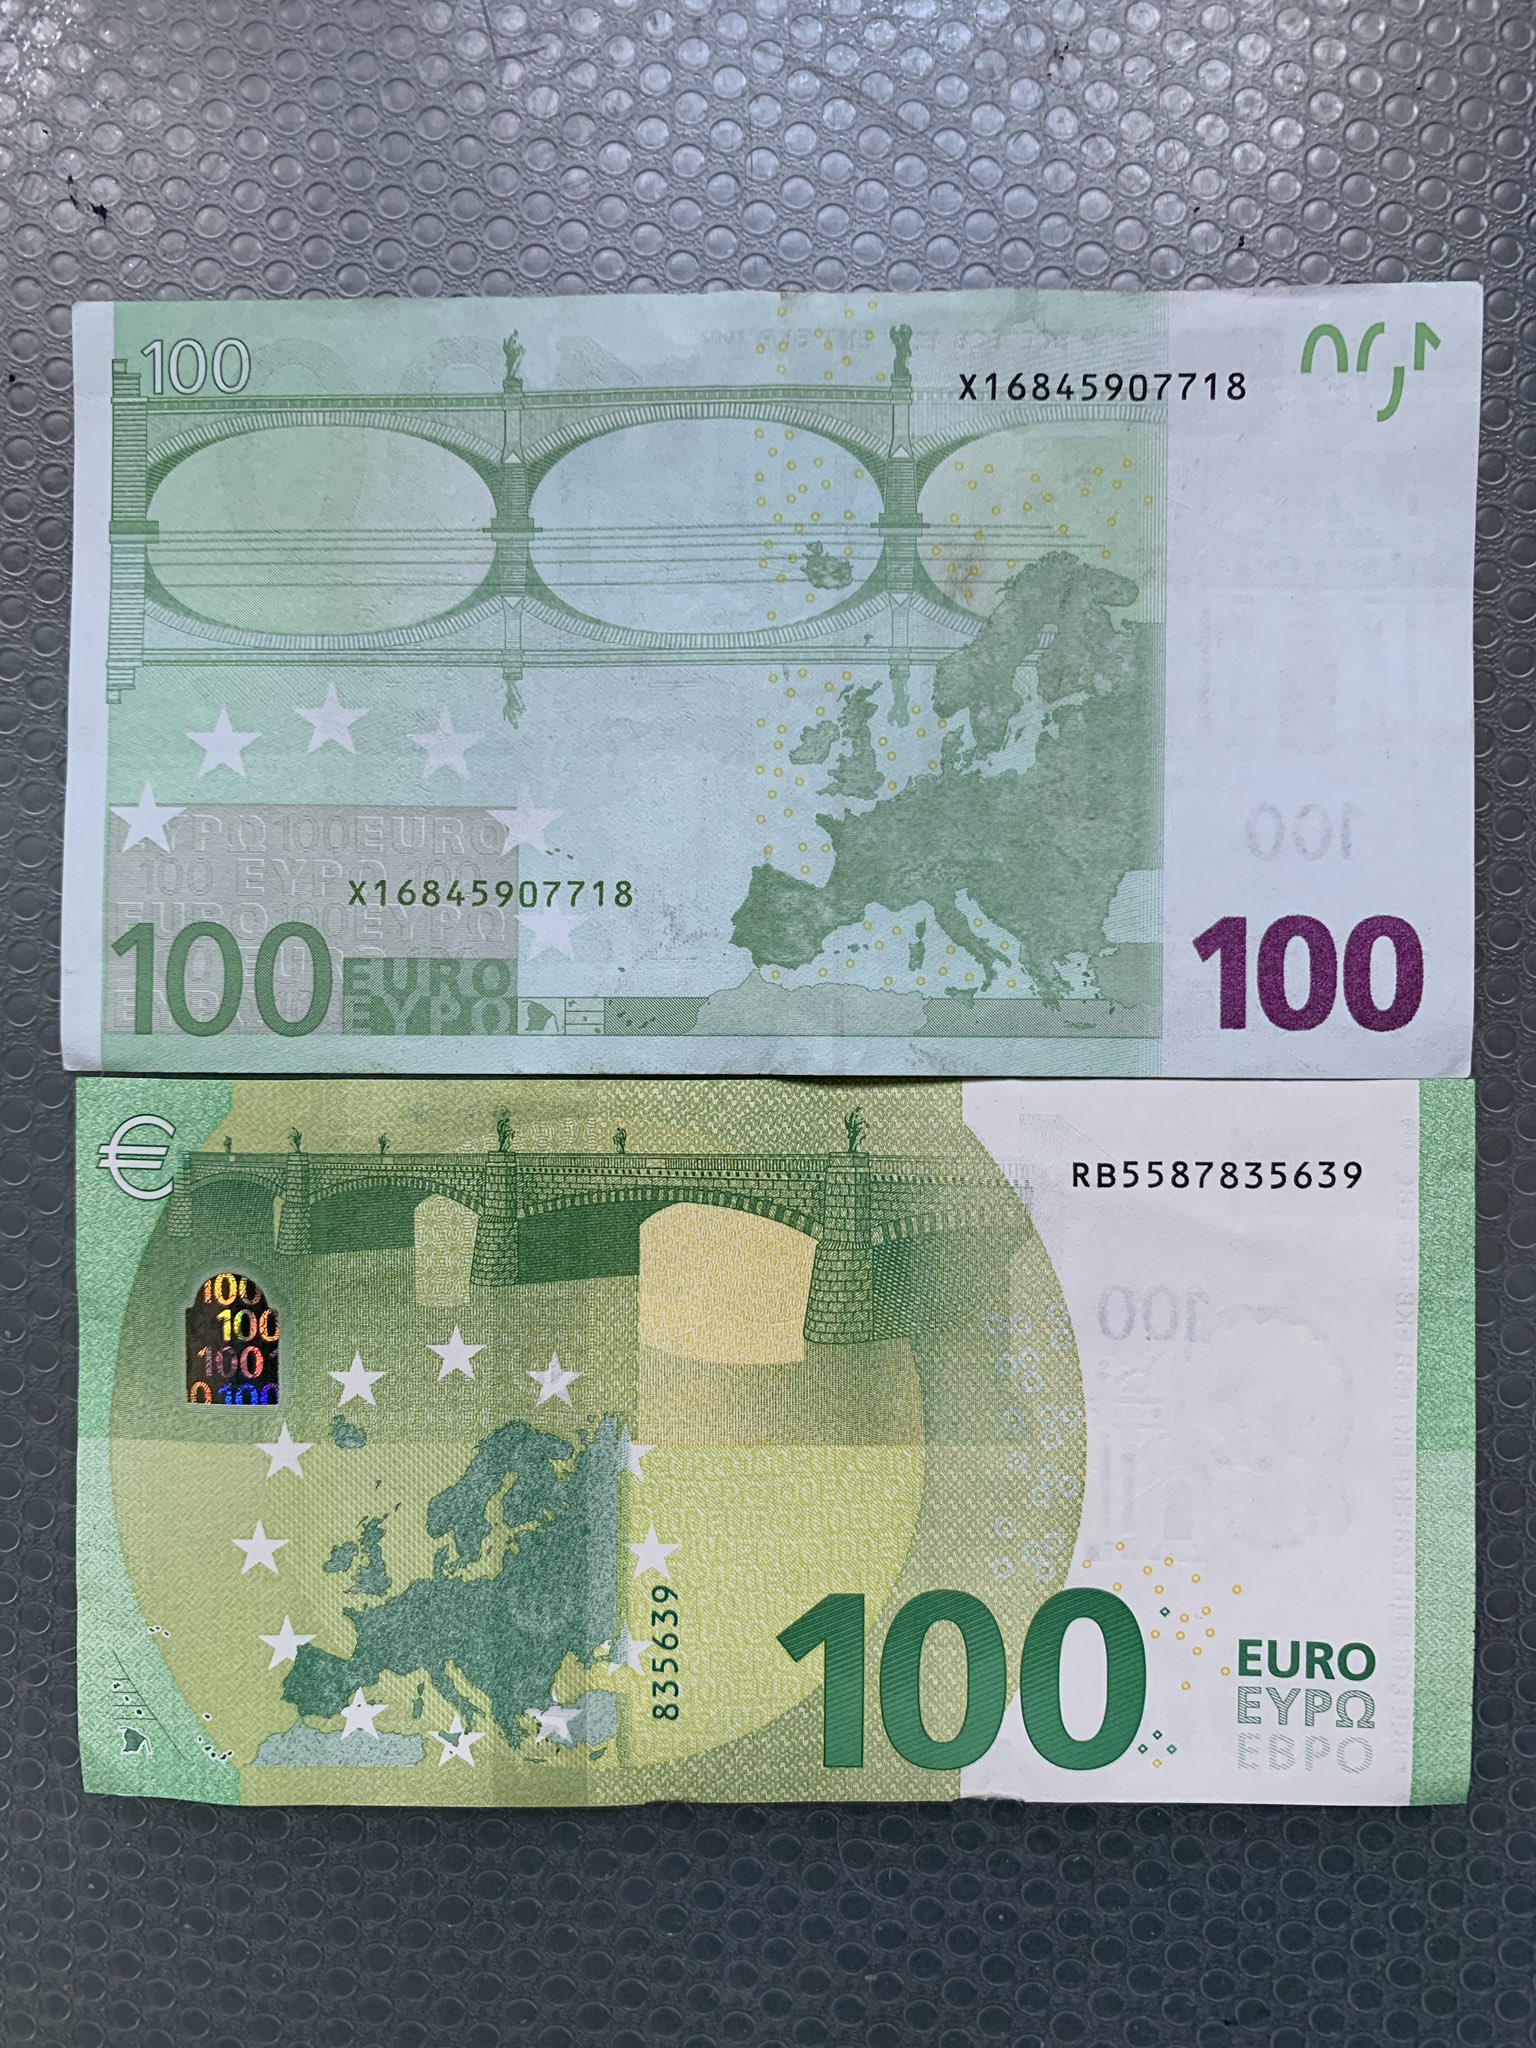 ヴィズマーラ恵子 上 旧100ユーロ紙幣 下 新100ユーロ紙幣 それぞれの裏面 ユーロ 紙幣には全て必ず橋の絵が描かれているのが特徴 日本円との大きさ比較 春財布を買う人は 海外ブランドの場合 気をつけよう 欧州のブランドはユーロ紙幣のサイズ